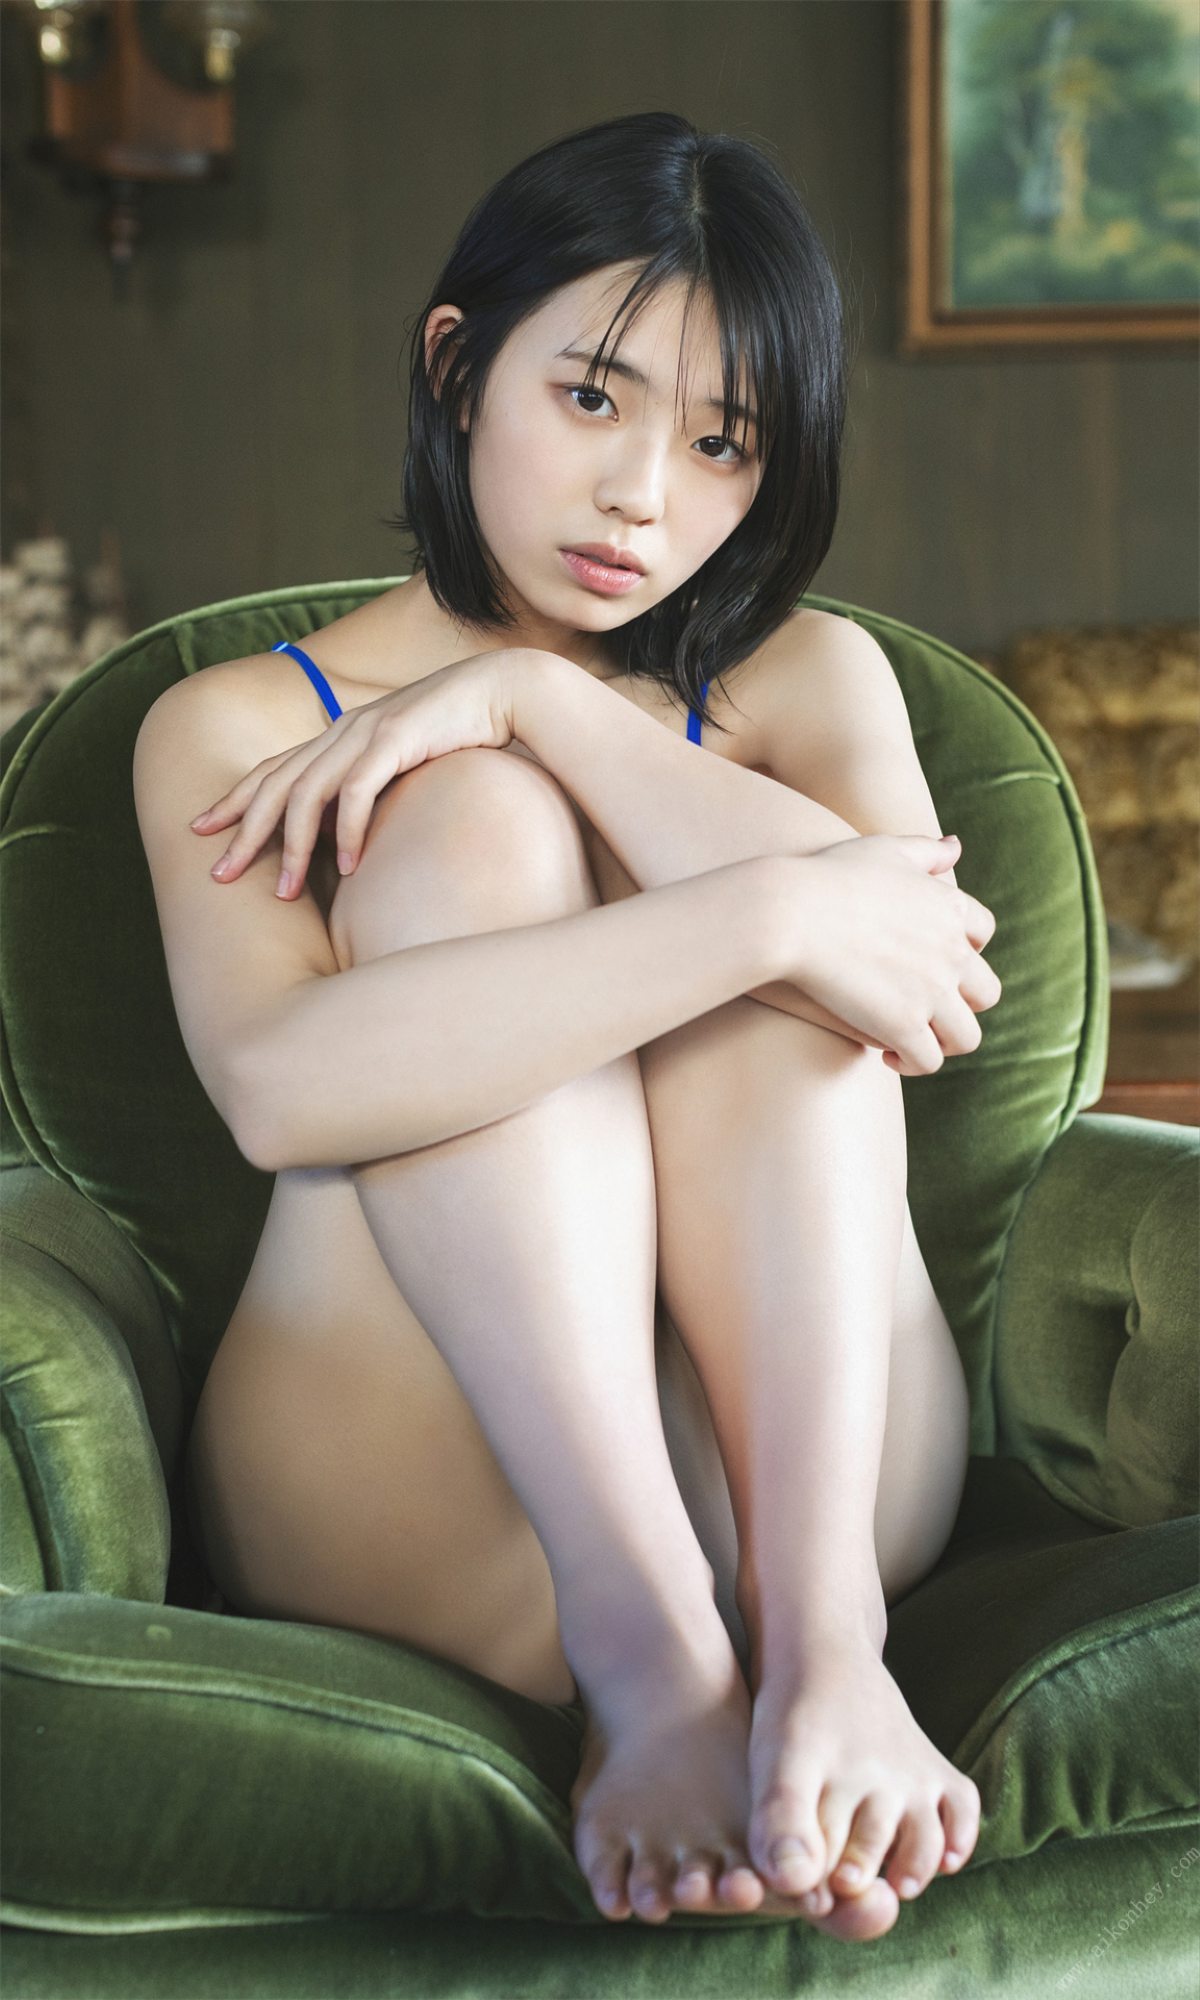 Weekly Photobook 2022 03 14 Hina Kikuchi 菊地姫奈 Harumeku honomeku 春めく、ほのめく 0015 1704270390.jpg